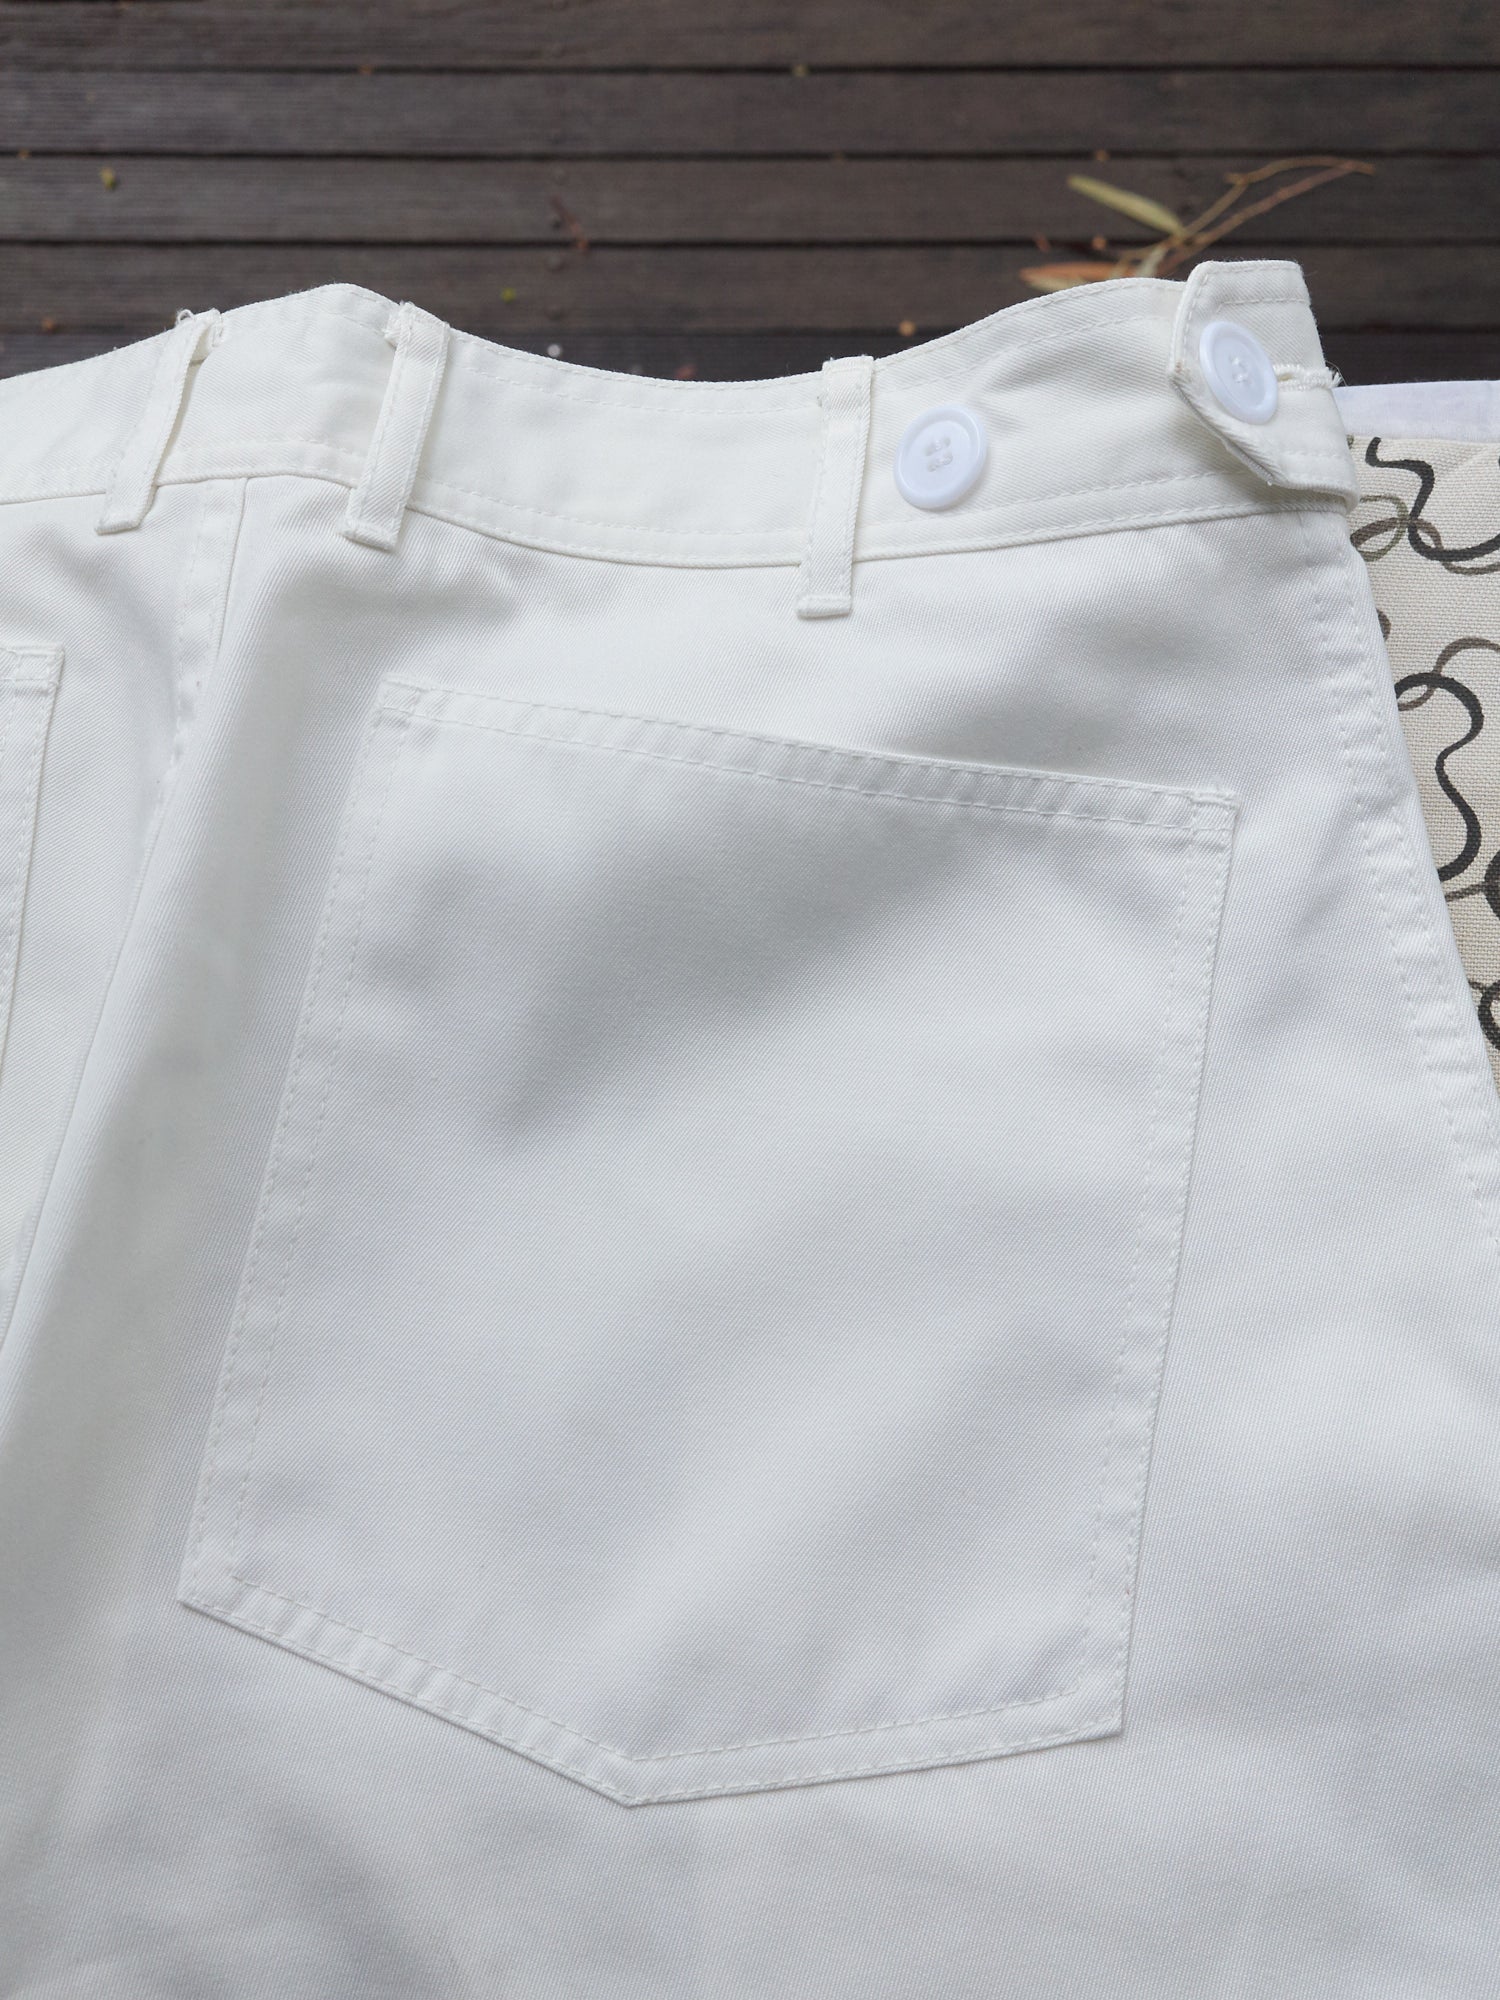 Comme des Garcons Homme Plus 1996 white polyester slash pocket trousers - mens S